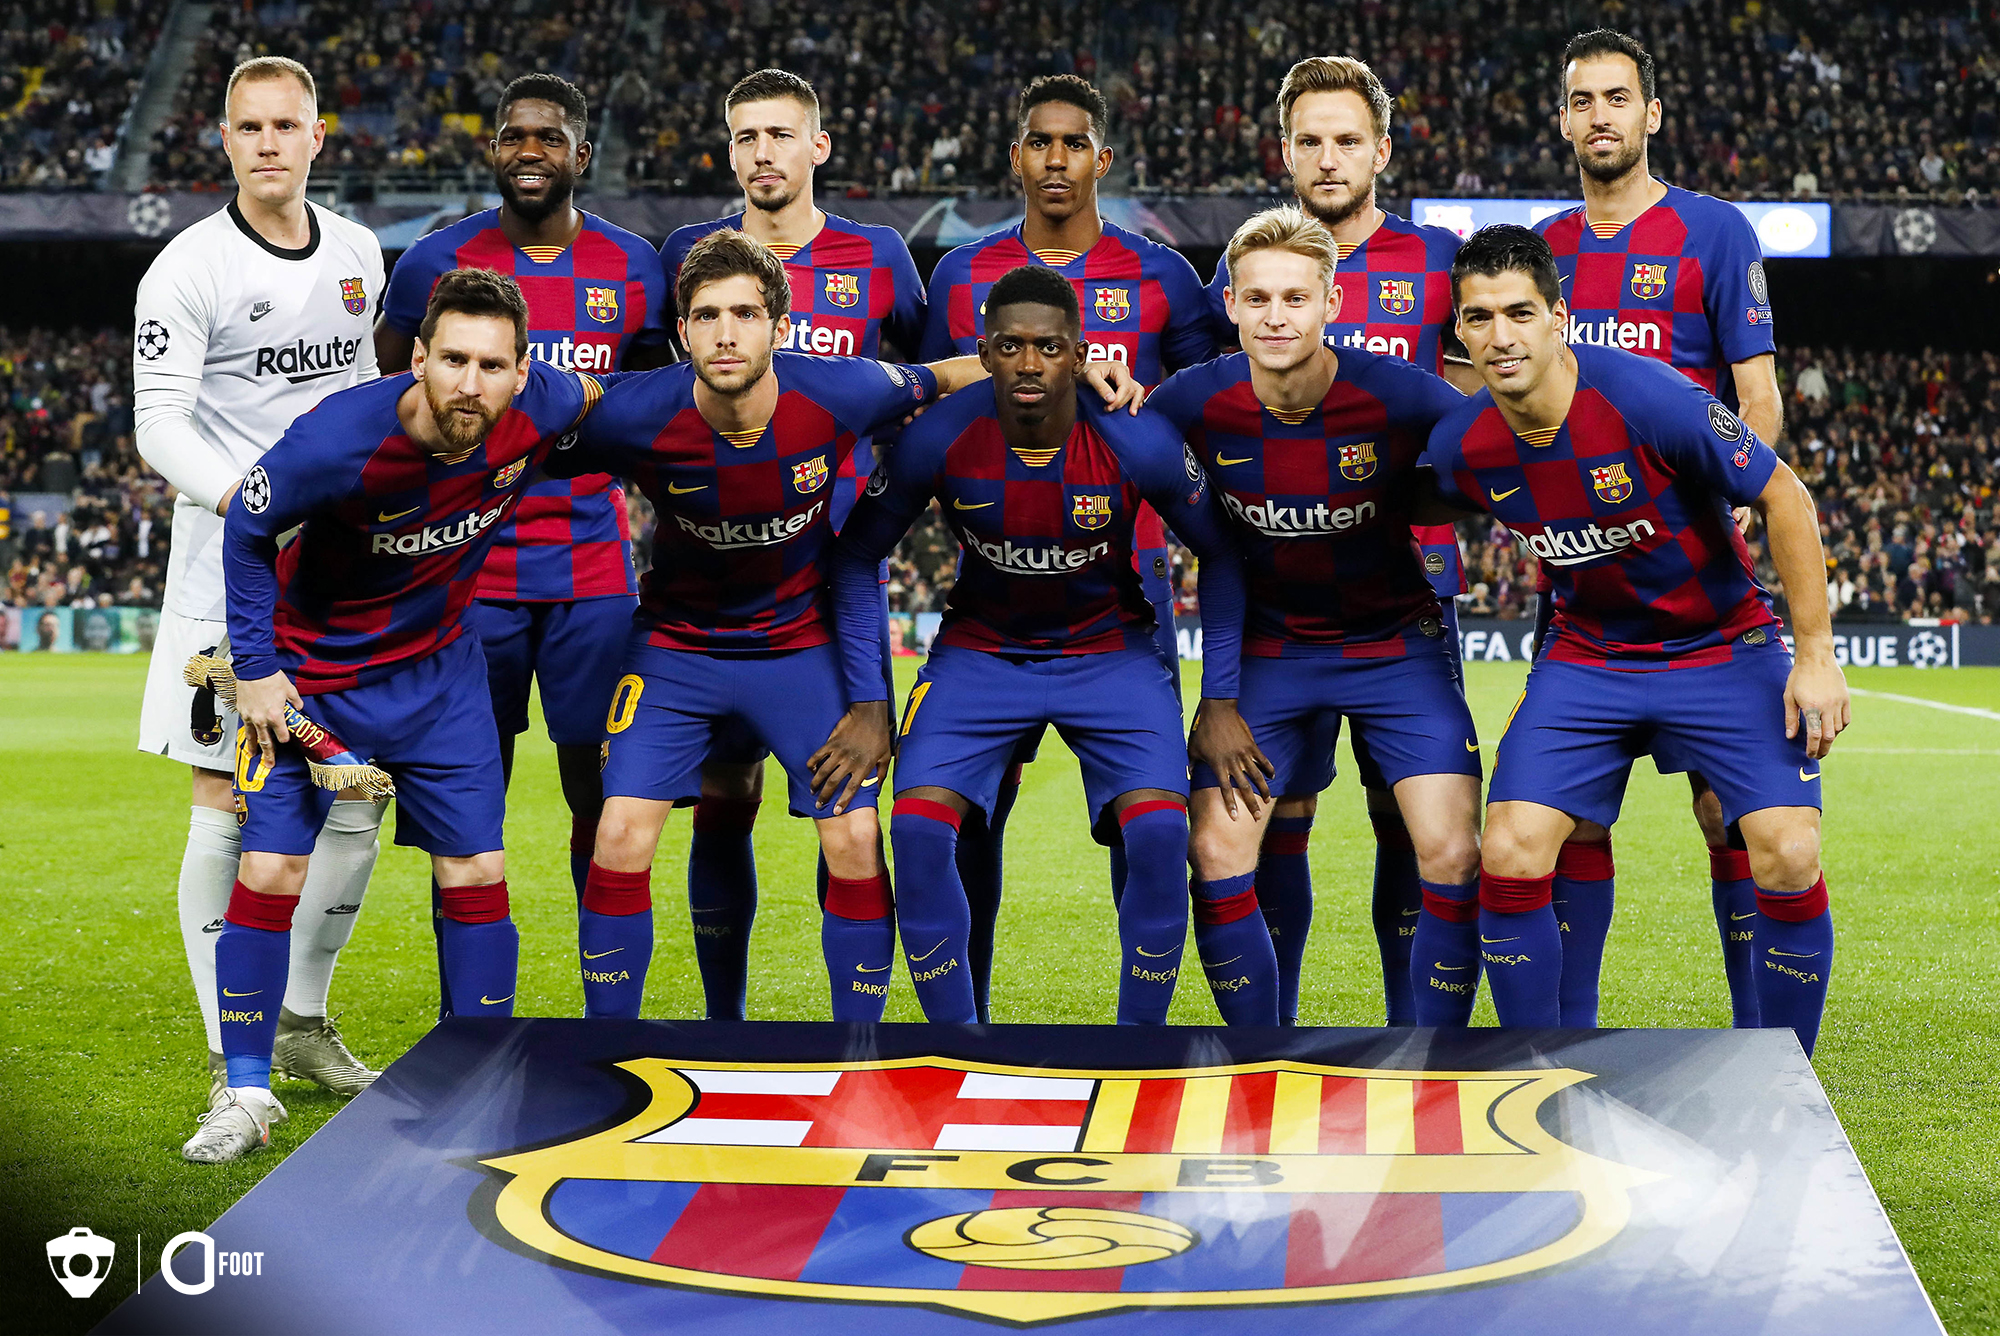 Statistiques : Le FC Barcelone, meilleure équipe d’Europe dans ce domaine